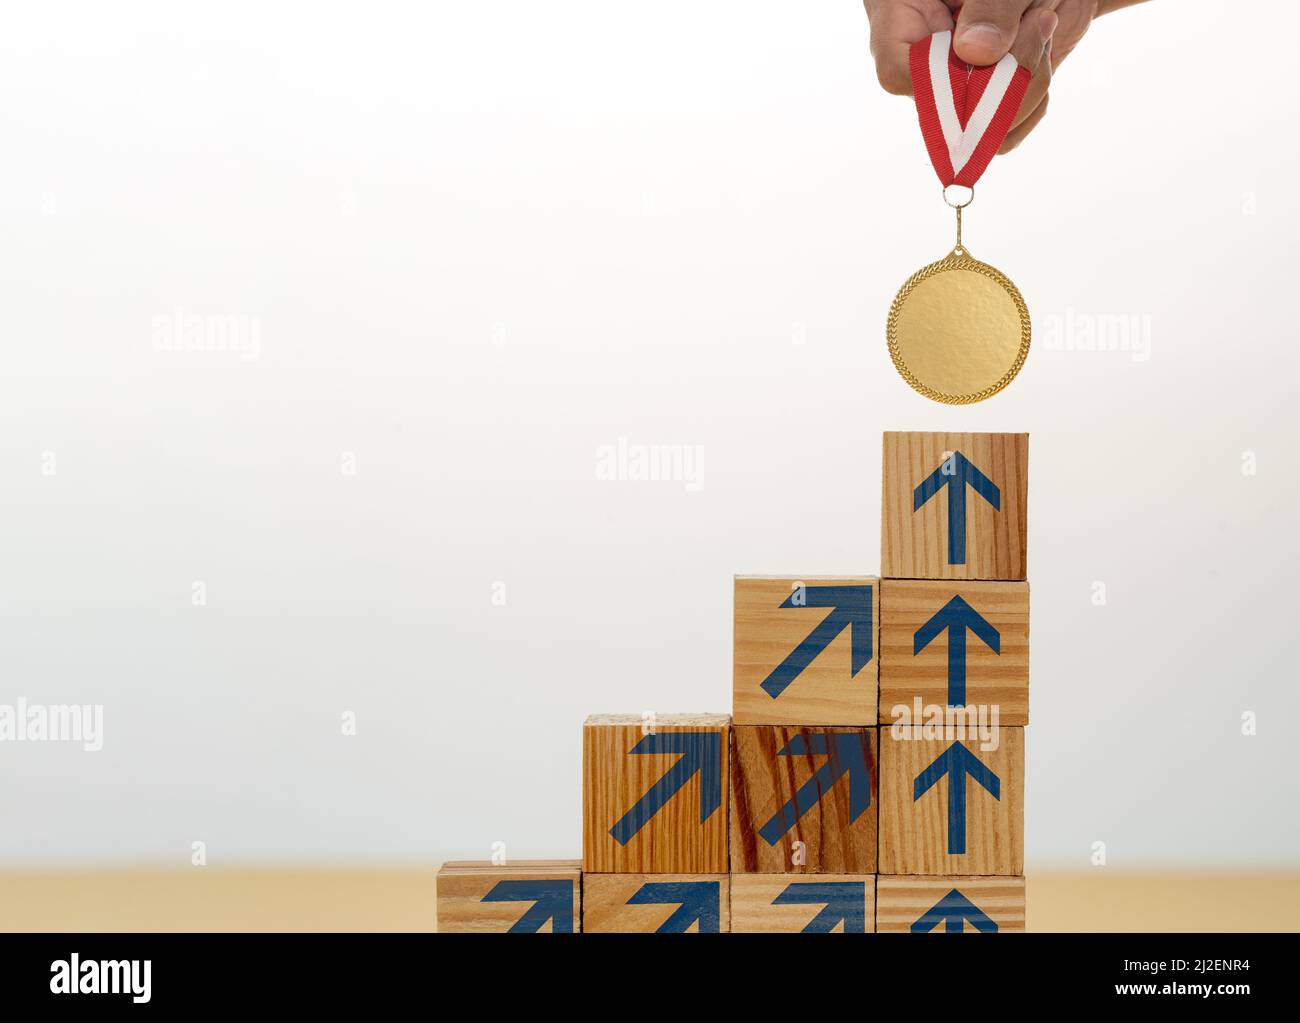 Scala step up fatta di blocchi di legno sulla medaglia d'oro superiore come simbolo di obiettivo ambizione motivazione sul successo. Foto Stock